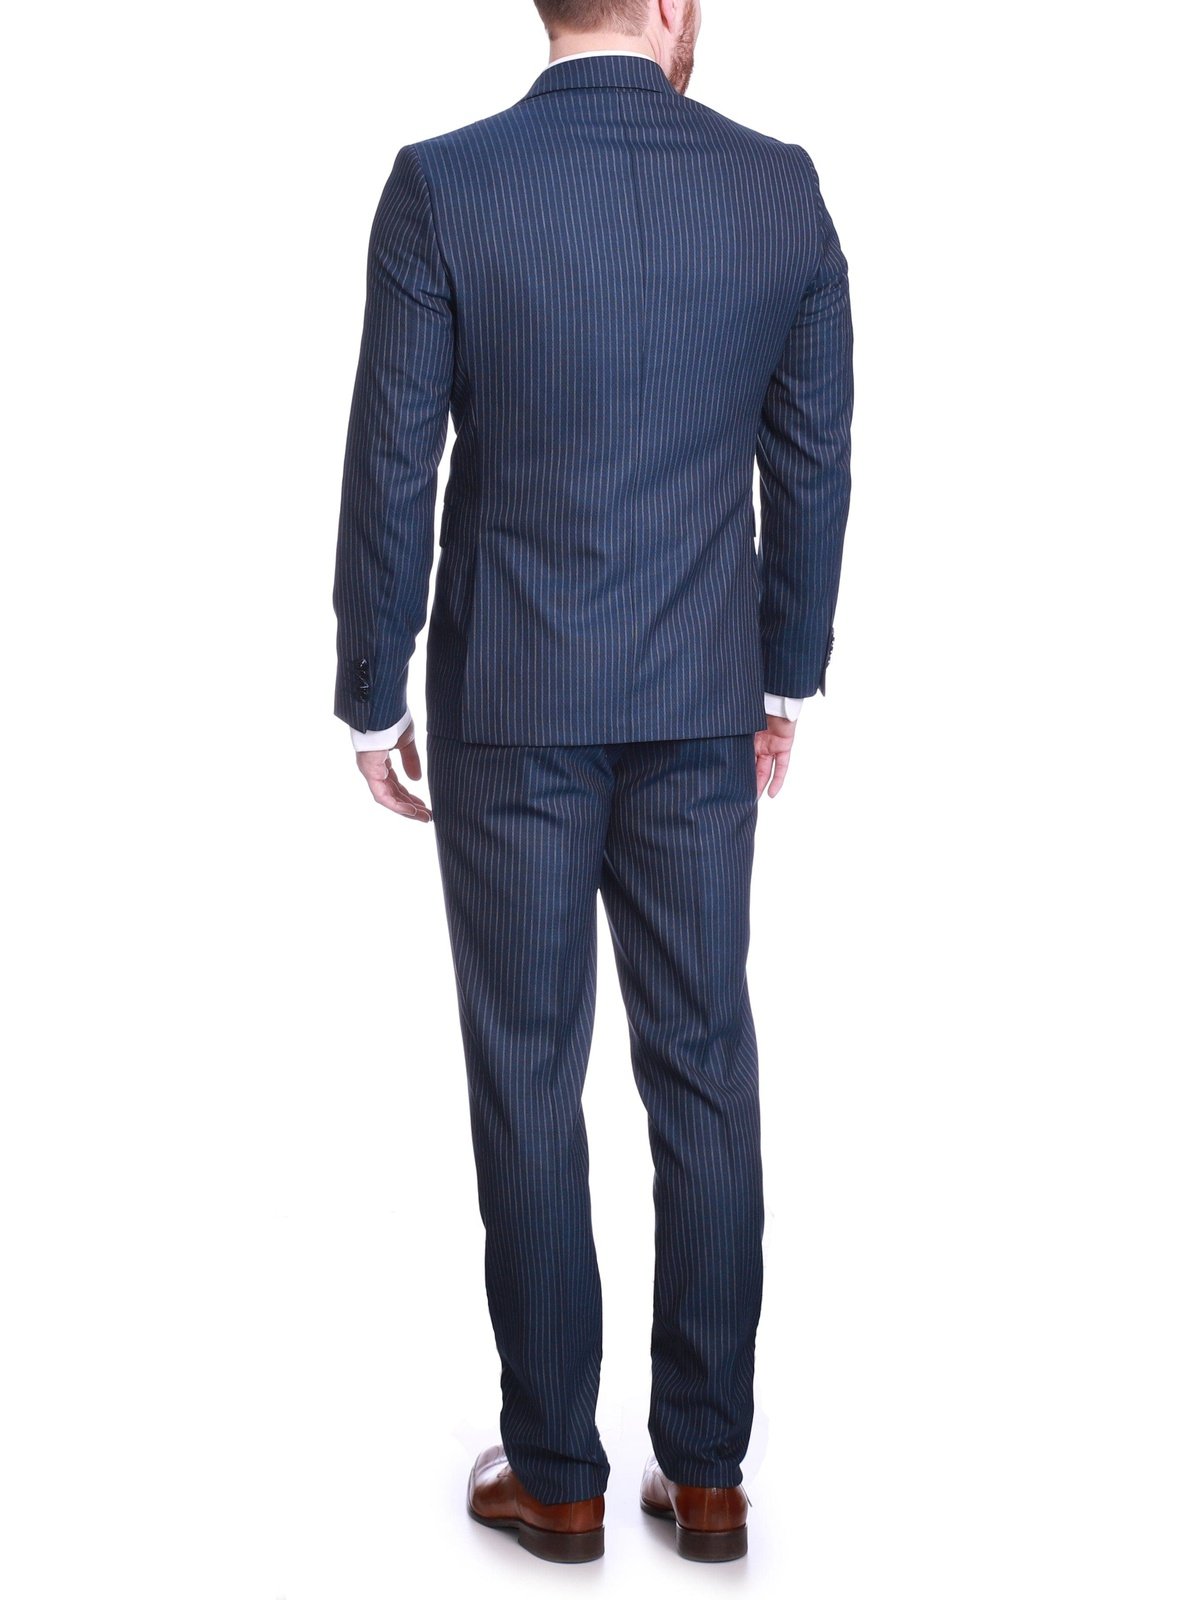 Carducci SUITS Carducci Mens Navy Blue Pinstripe Wool Blend Slim Fit Suit With Peak Lapels